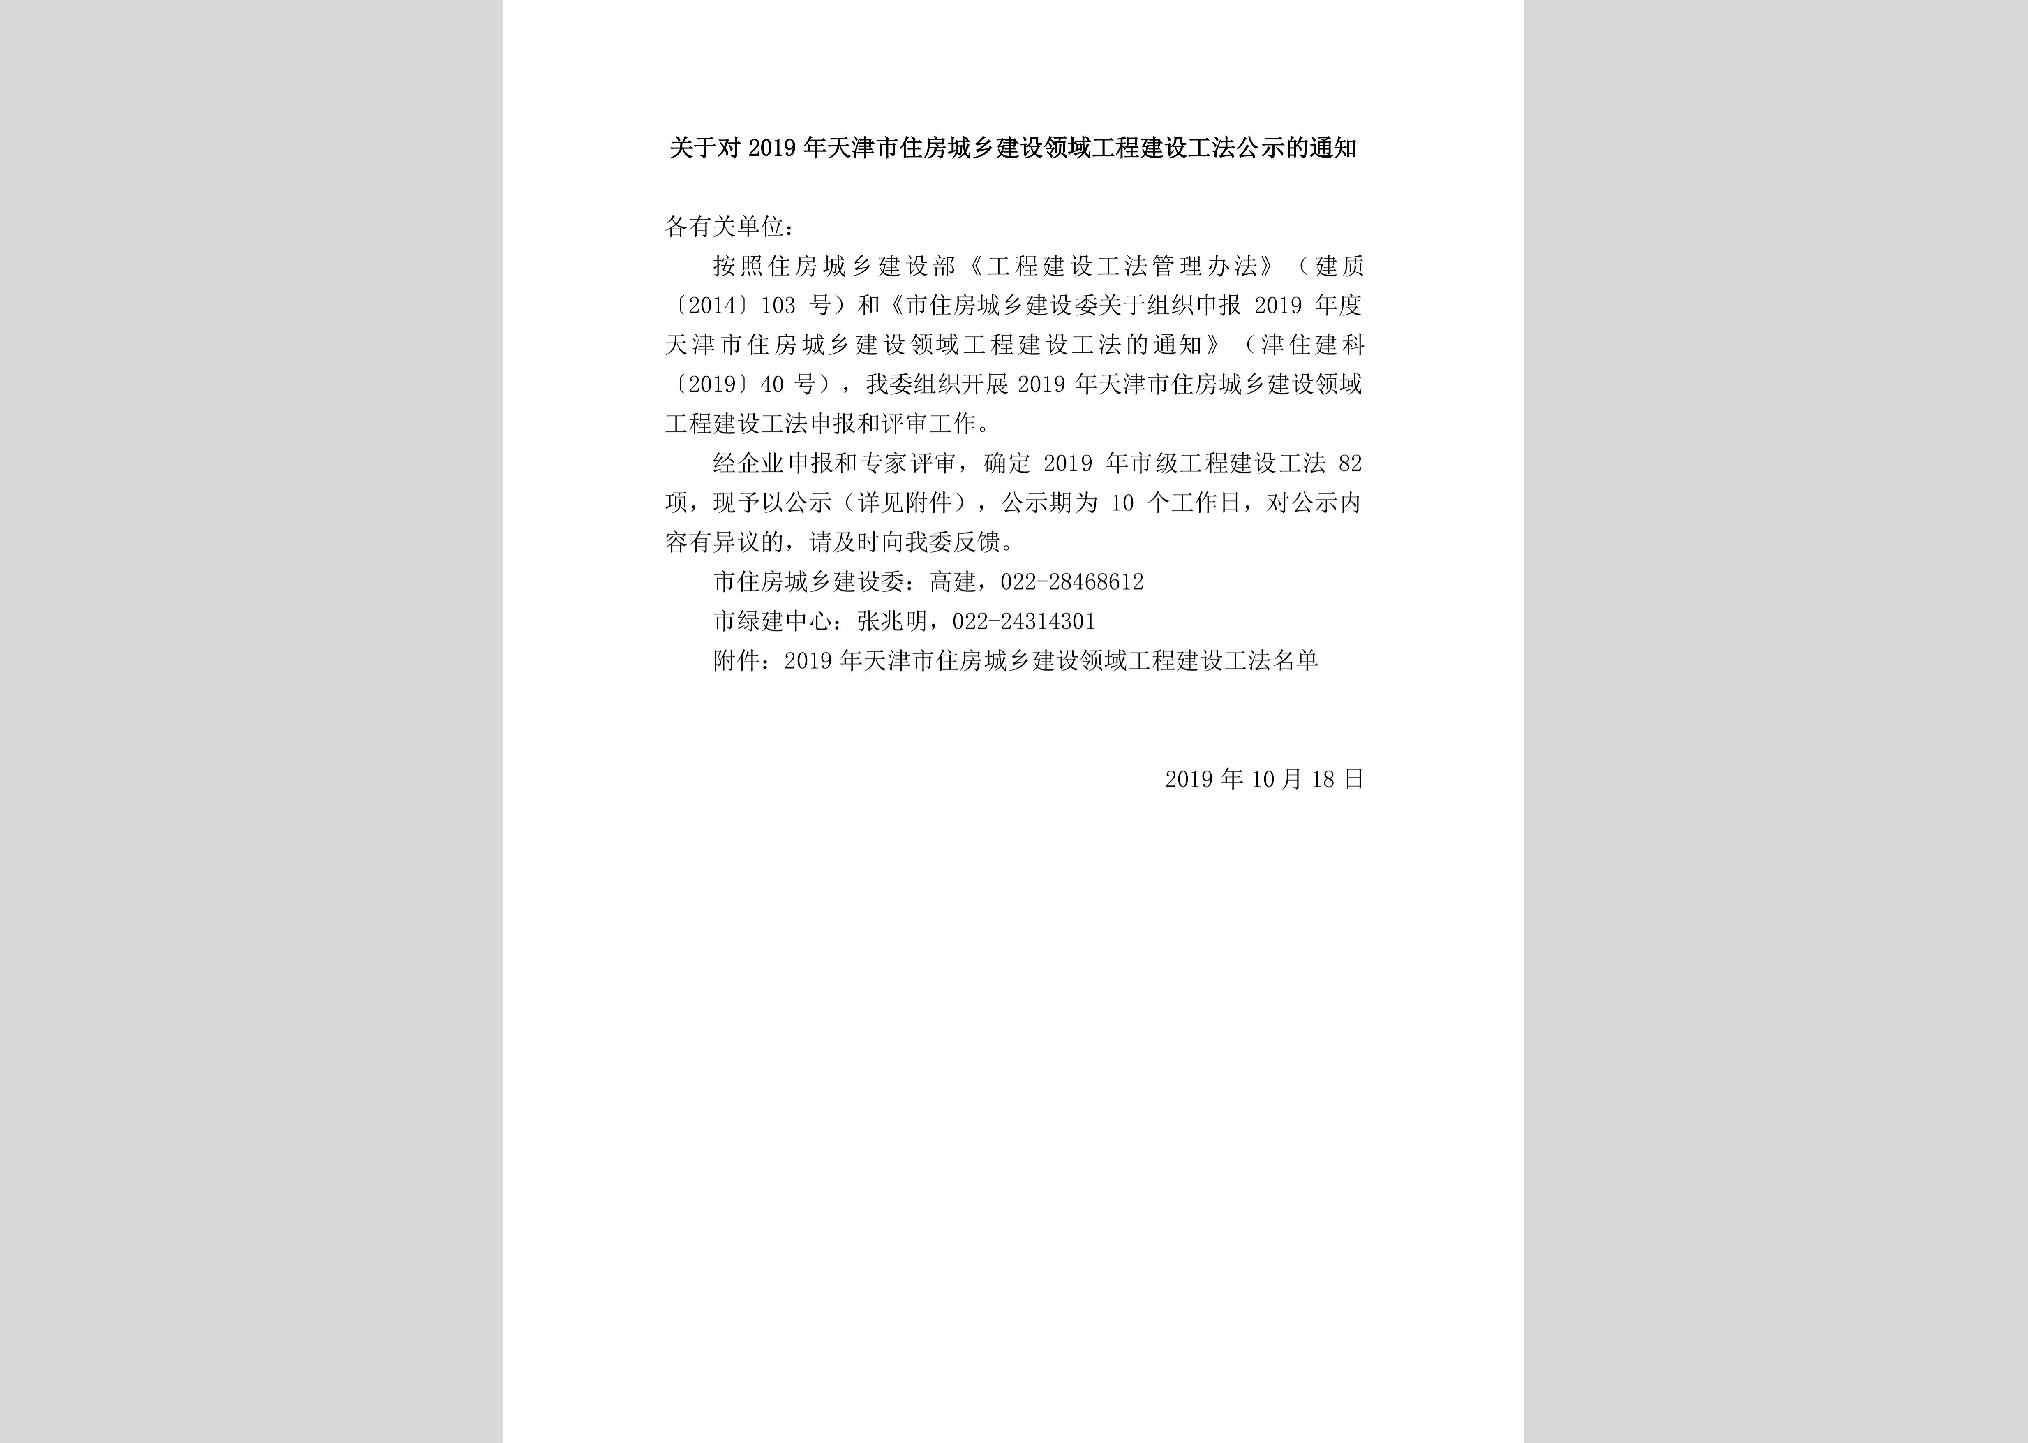 TJ-ZFCXGFGS-2019：关于对2019年天津市住房城乡建设领域工程建设工法公示的通知